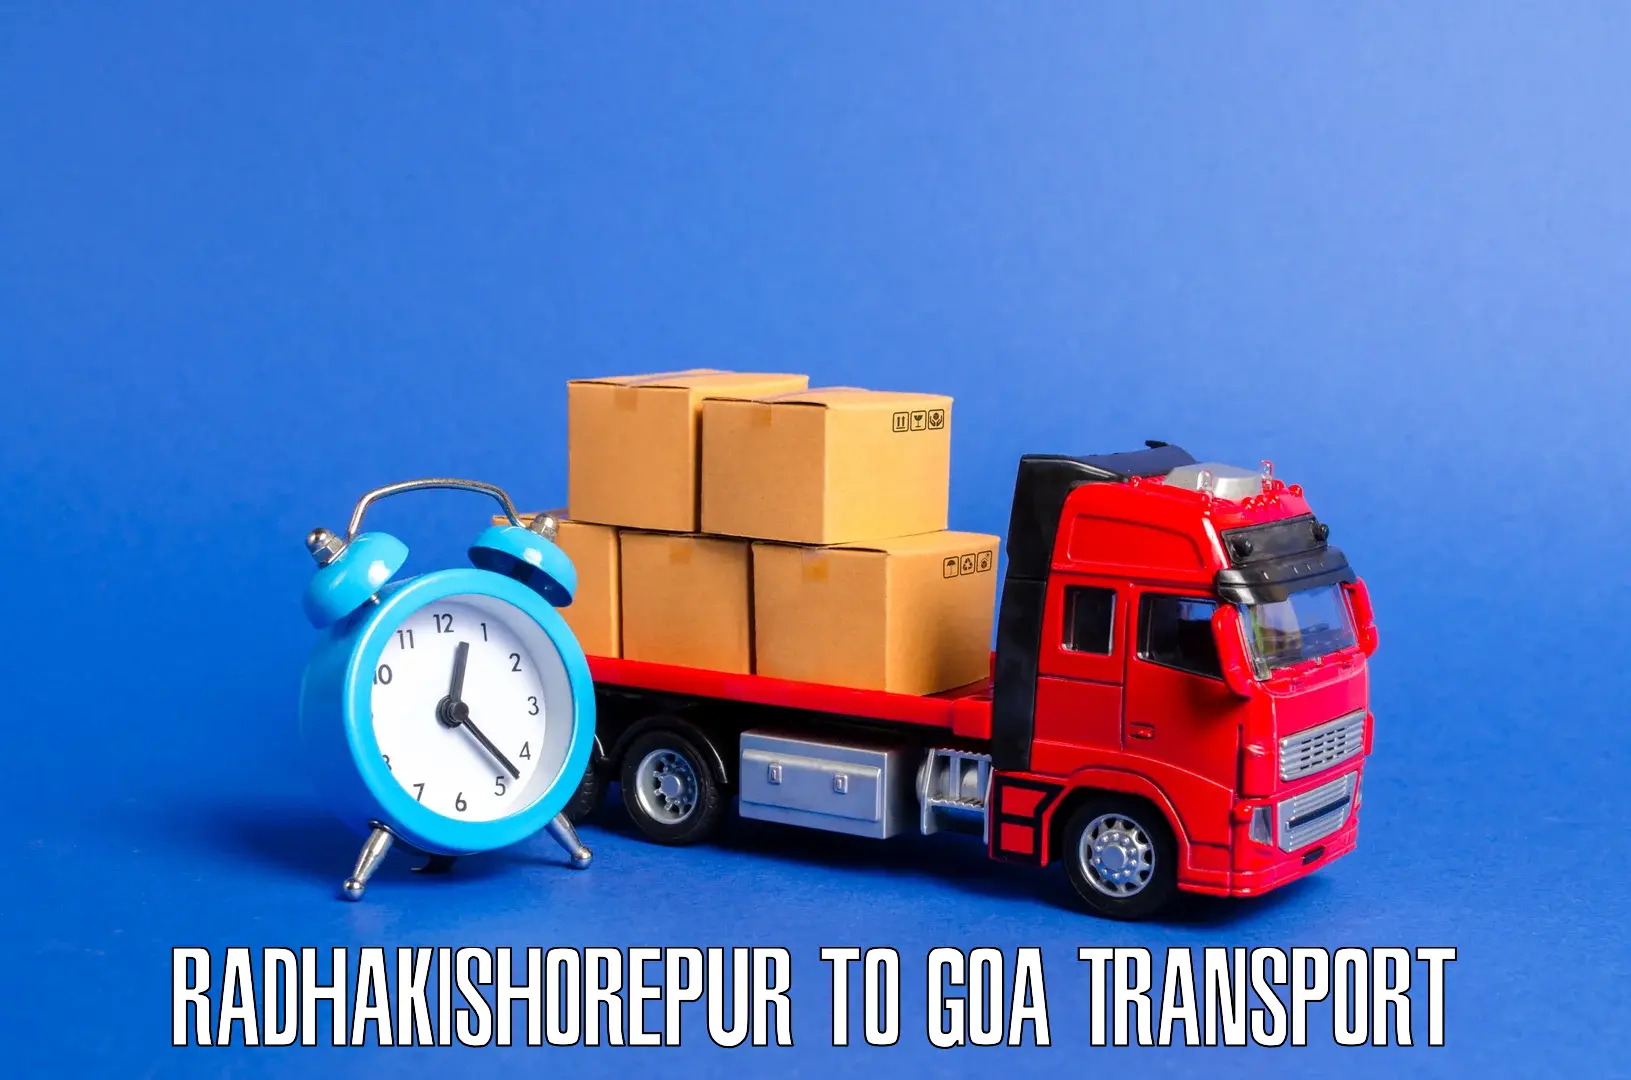 Cargo transportation services Radhakishorepur to Bardez